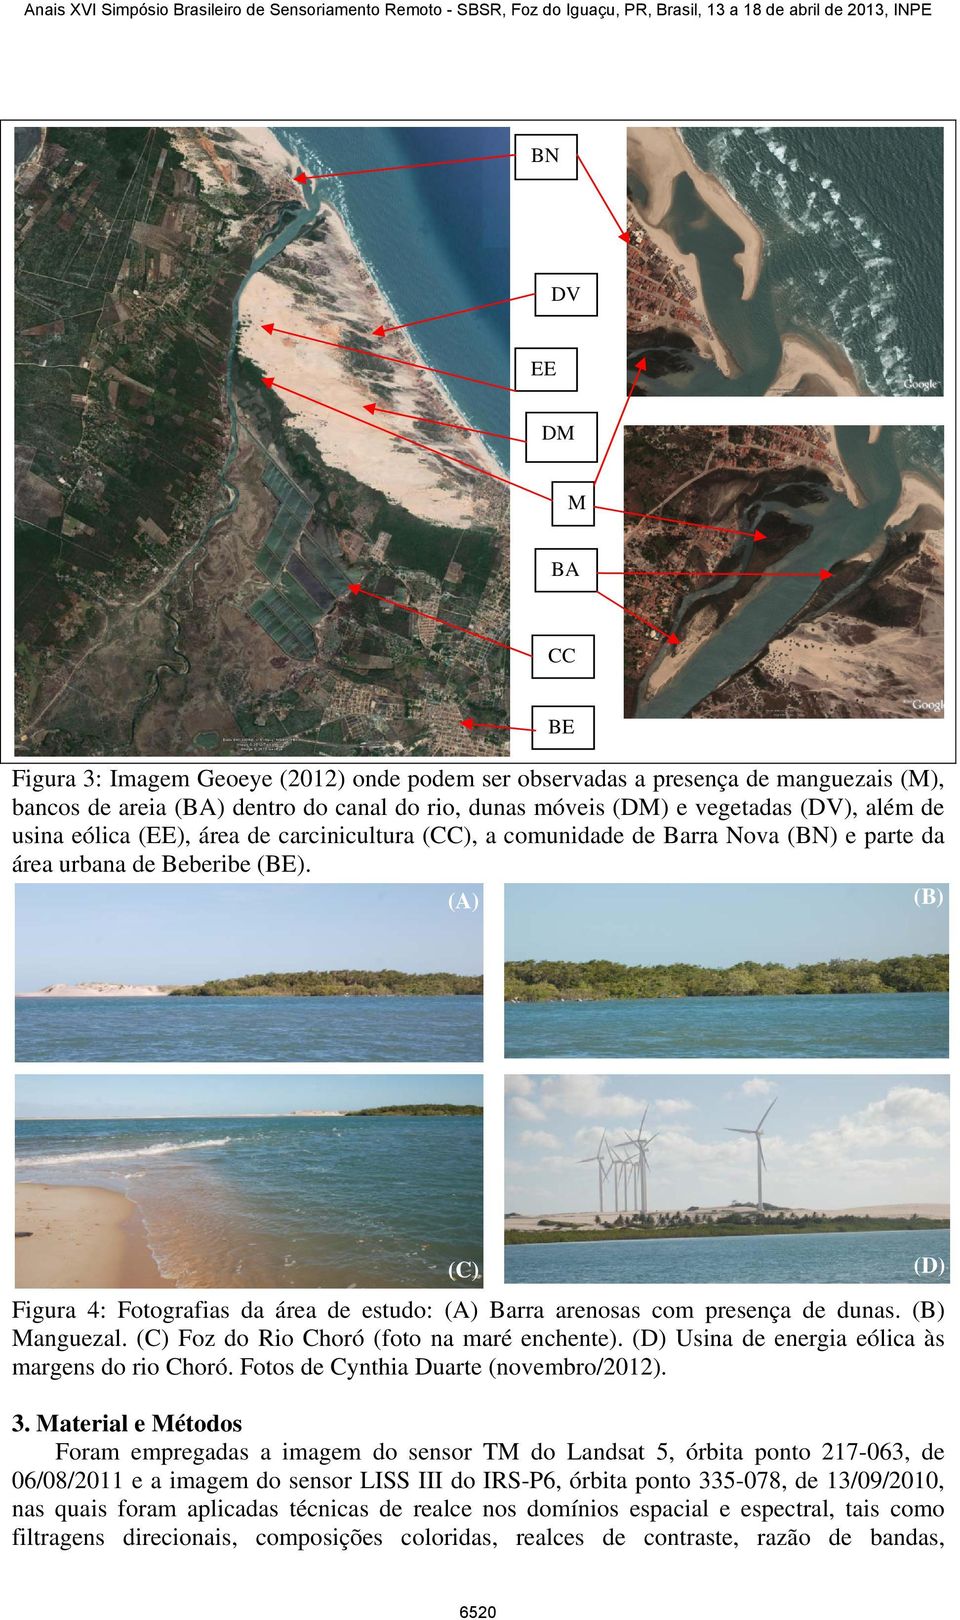 BE (C) Figura 4: Fotografias da área de estudo: Barra arenosas com presença de dunas. Manguezal. (C) Foz do Rio Choró (foto na maré enchente). (D) Usina de energia eólica às margens do rio Choró.